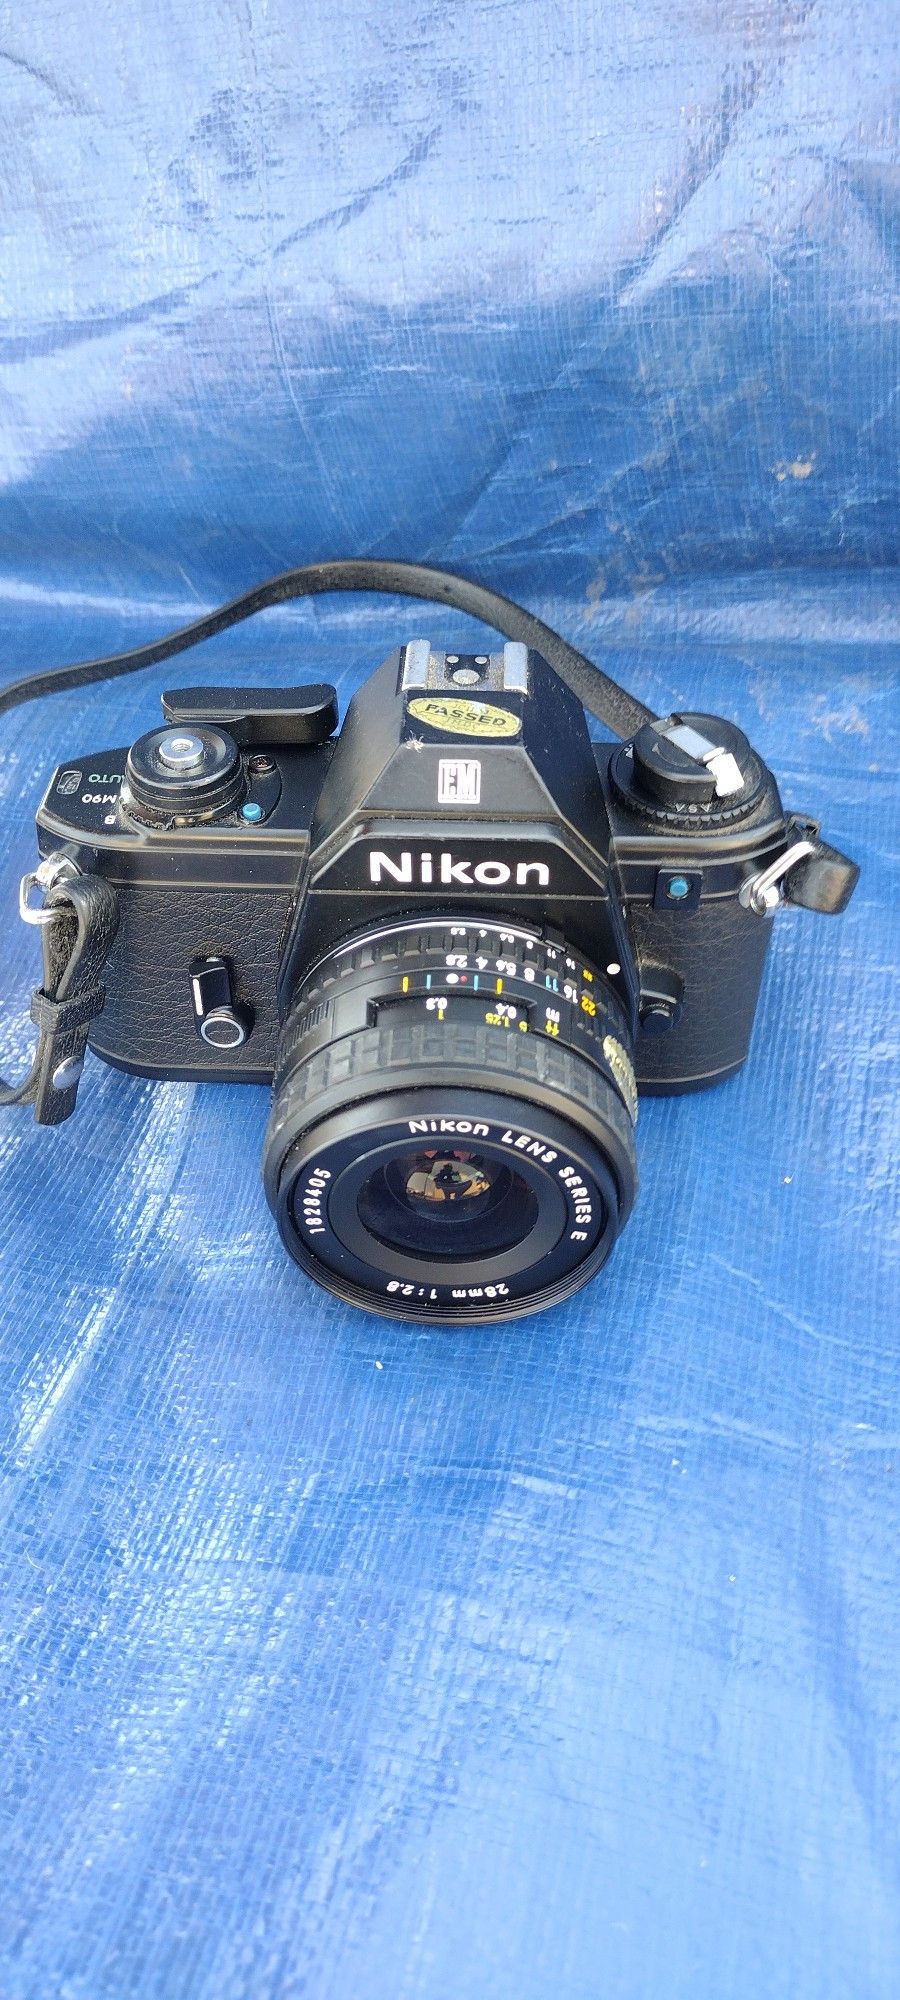 Camera Nikon EM 35mm Film Camera With Nikon 28mm Lens Works